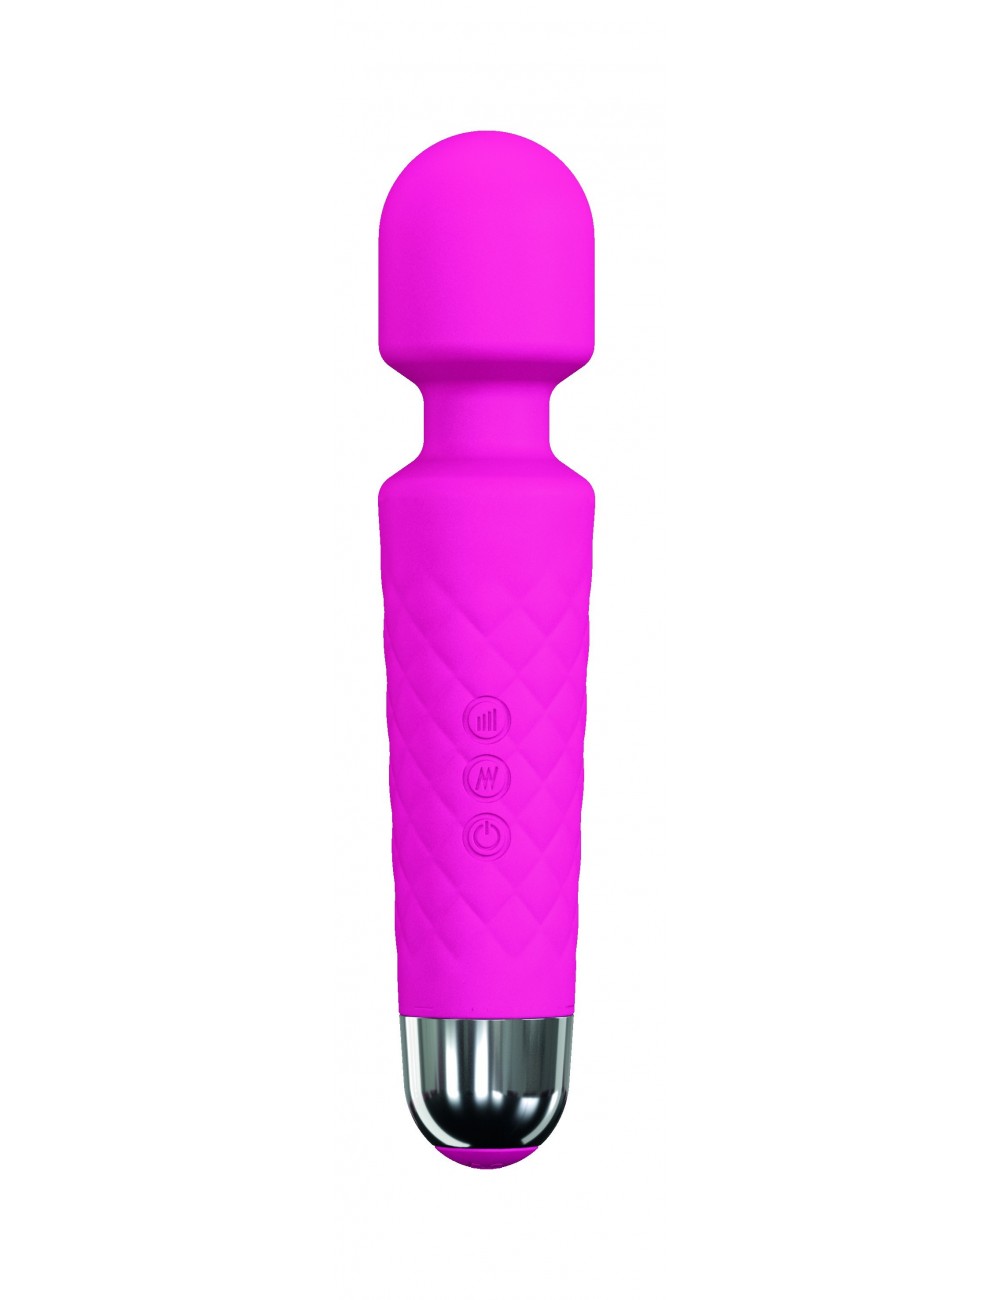 Sextoys - Masturbateurs & Stimulateurs - Stimulateur clitoridien rechargeable Wanderful couleur Rose - Dorcel